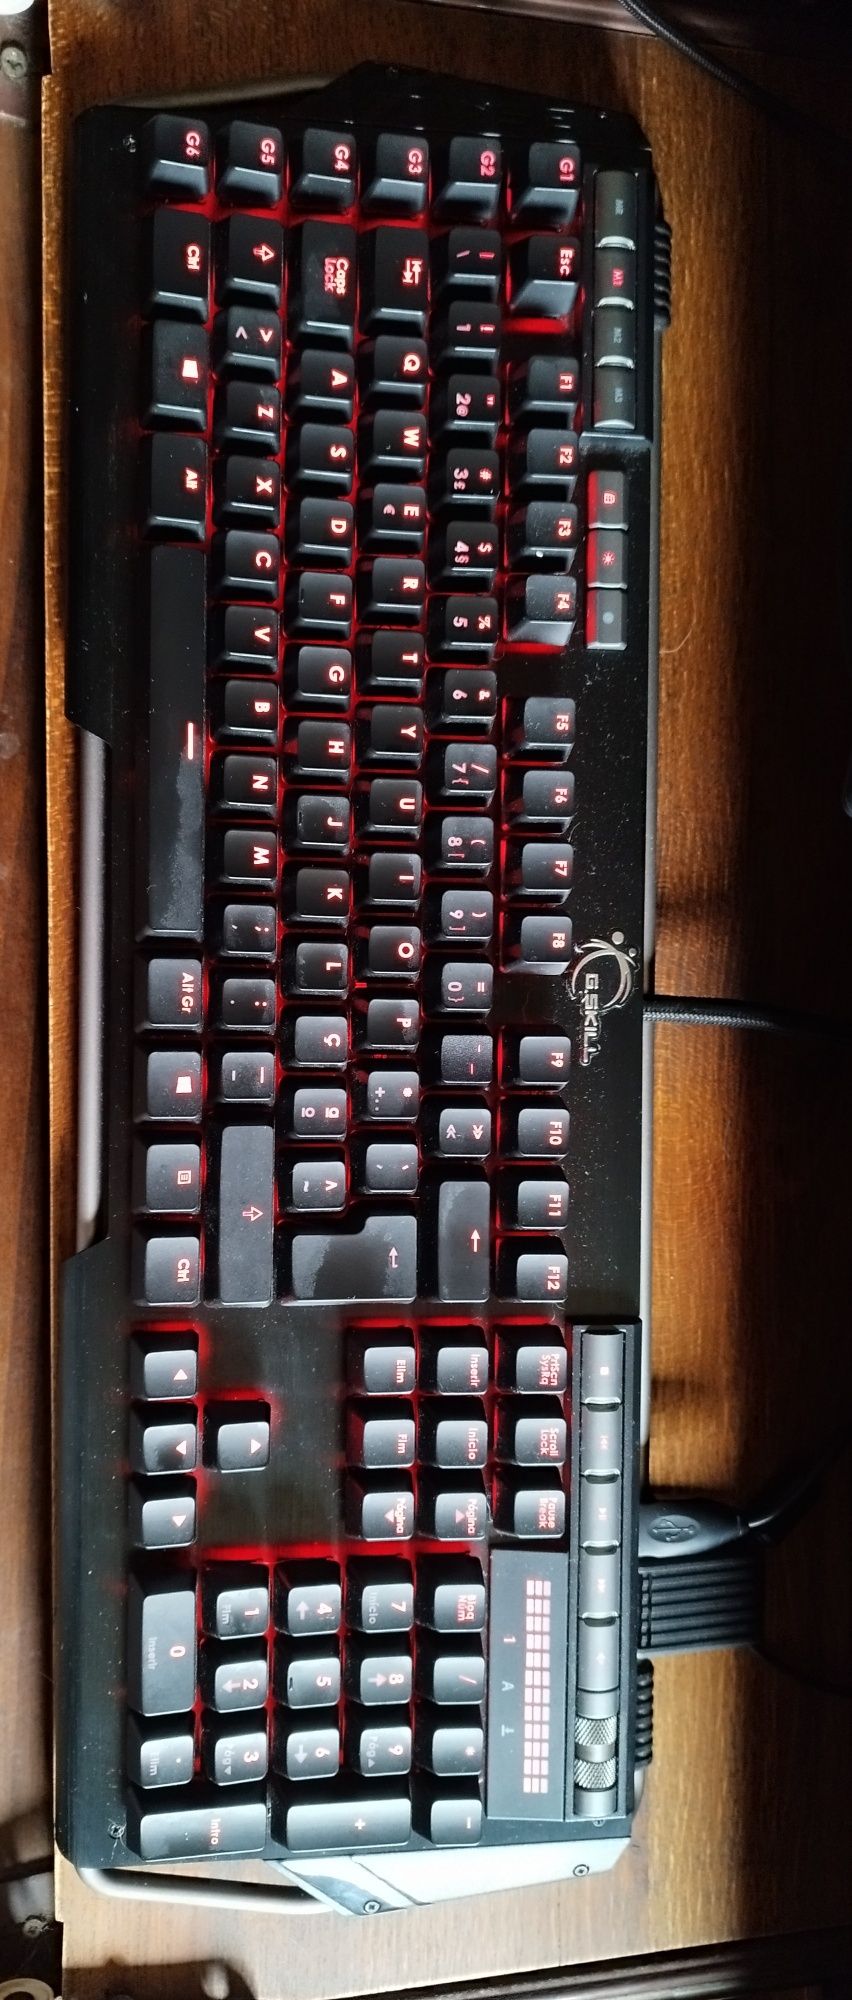 KM780 MX, Cherry MX Red teclado mecânico